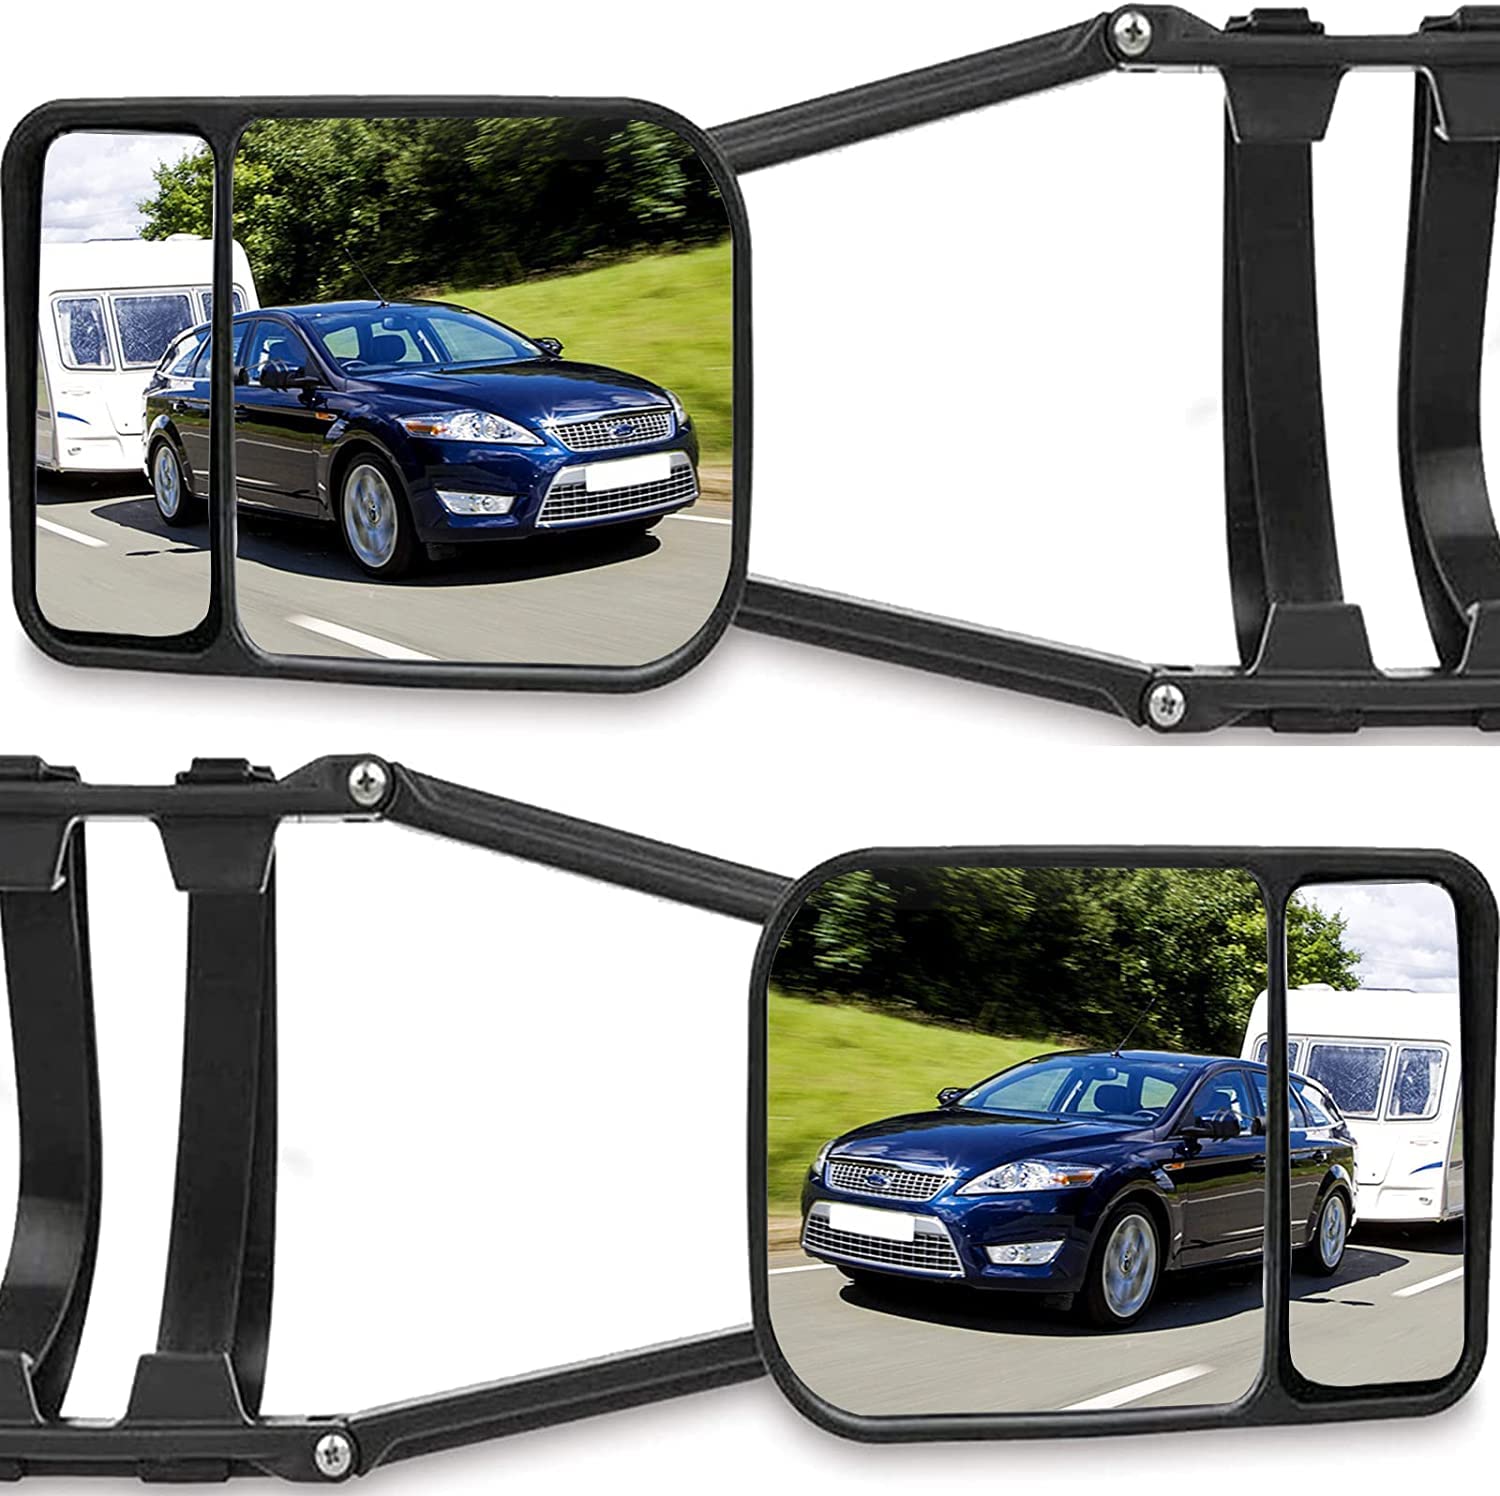 Abschleppspiegel, TOTMOX 2 Stück Auto Außen Zusatzspiegel Anhängerspiegel, Universal Wohnwagenspiegel Caravanspiegel Außenspiegel Rückspiegel, Wohnwagen Zubehör Stützlastwaage Spiegel, Verstellbare von TOTMOX